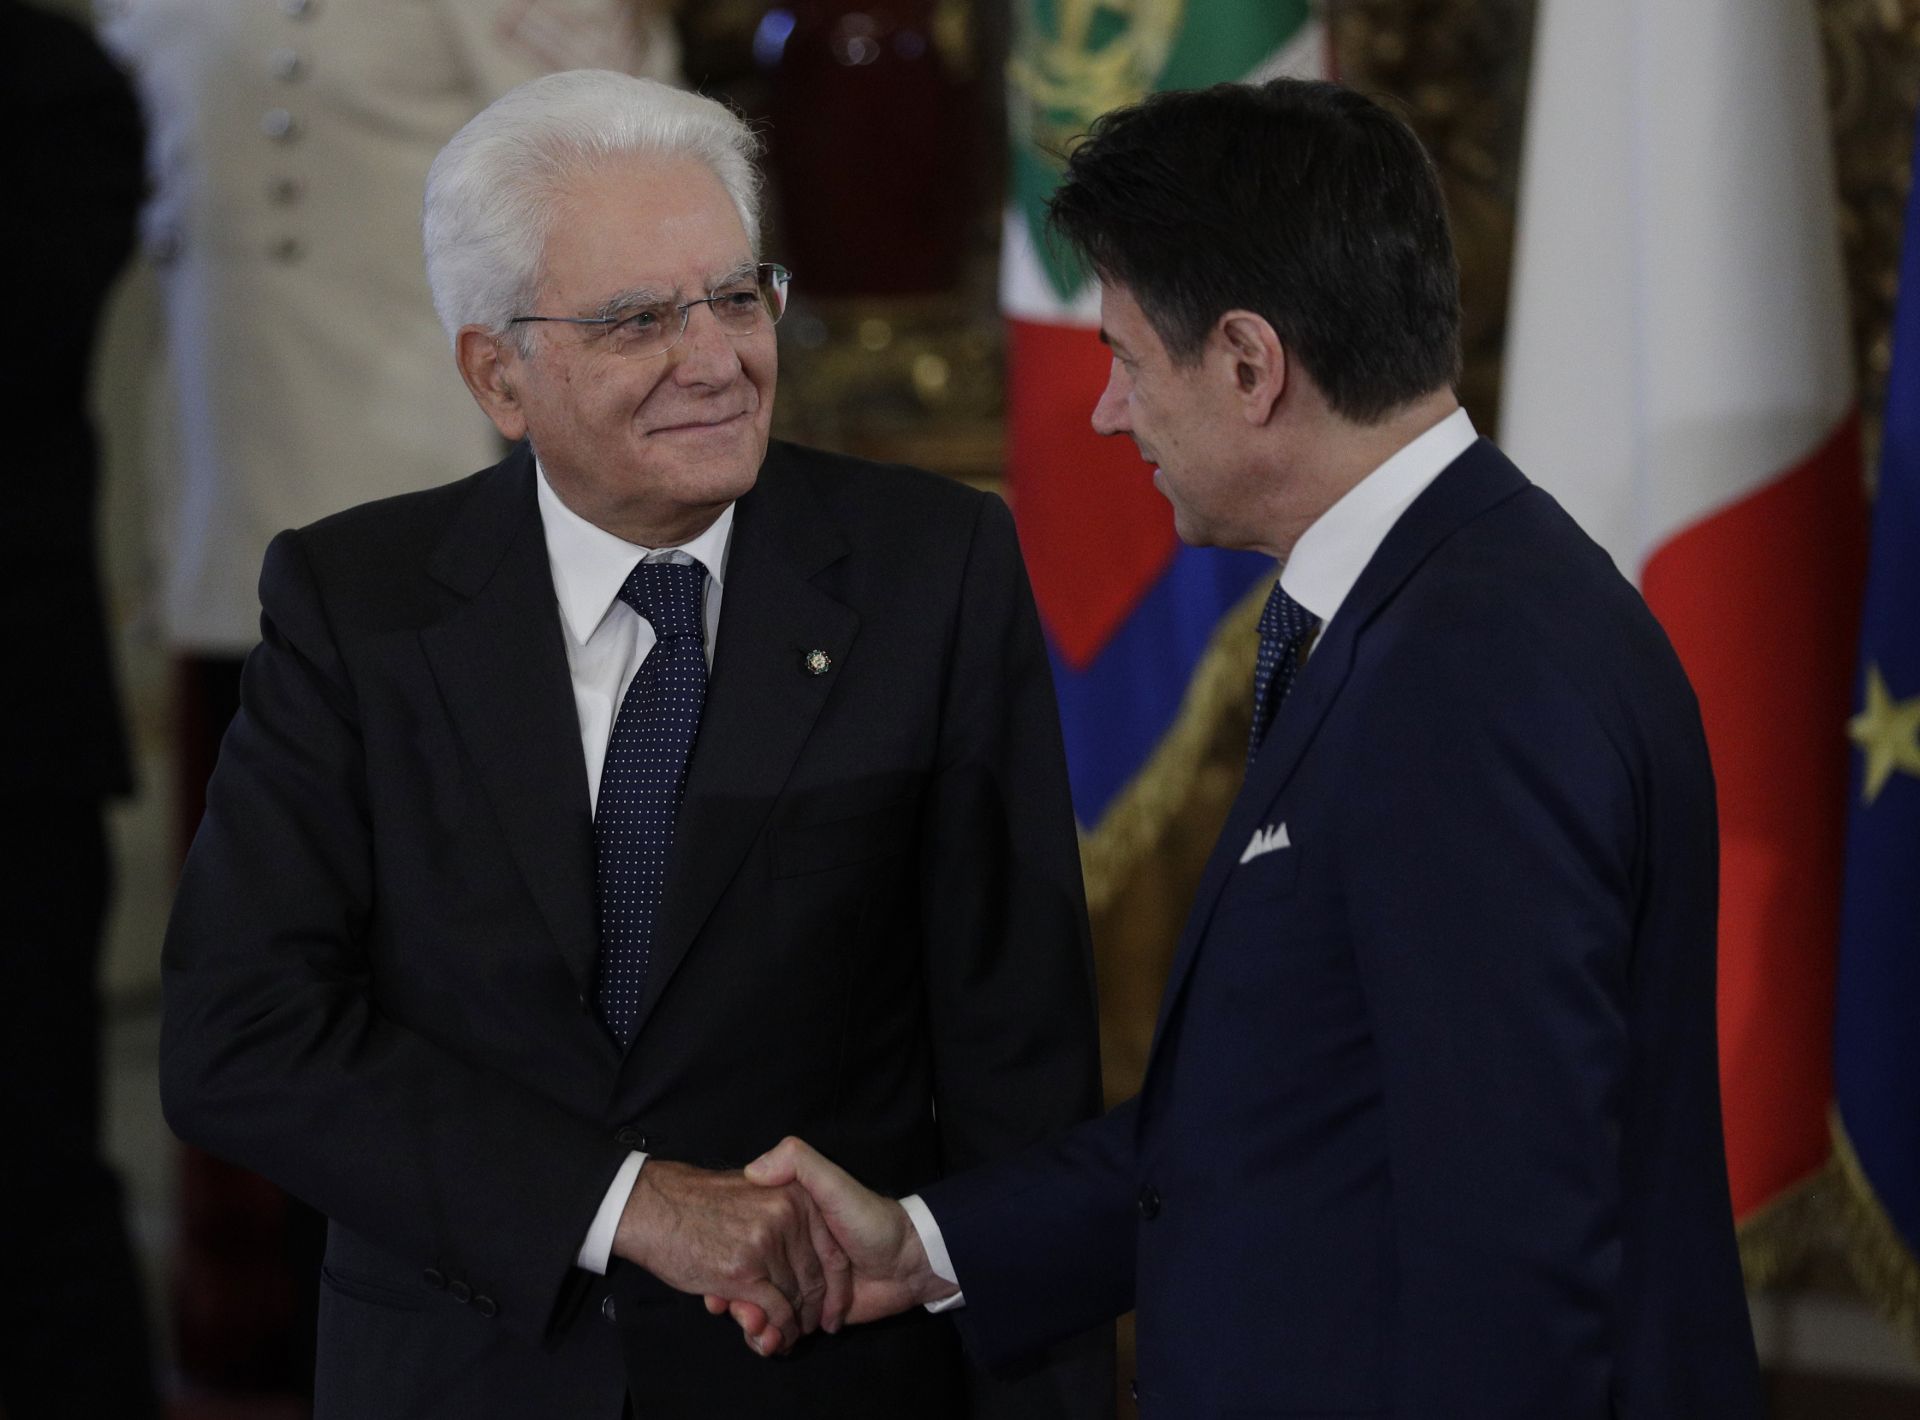 На тази снимка от 5 септември 2019 г., италианският президент Серджо Матарела, вляво, се ръкува с премиера Джузепе Конте по време на церемонията по полагане на клетва в президентския дворец